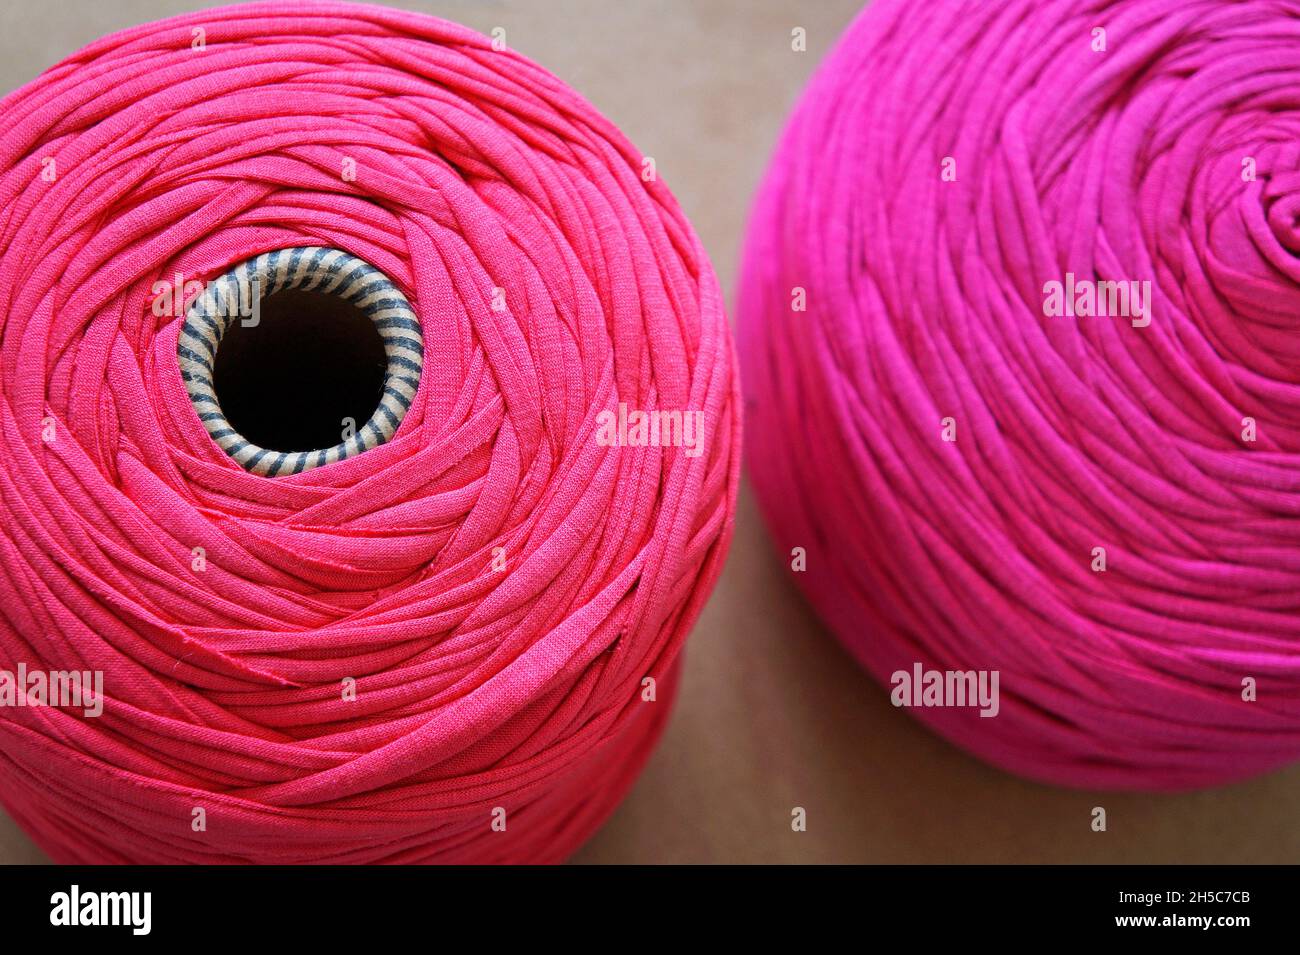 Boules de laine roses sur la table Banque D'Images